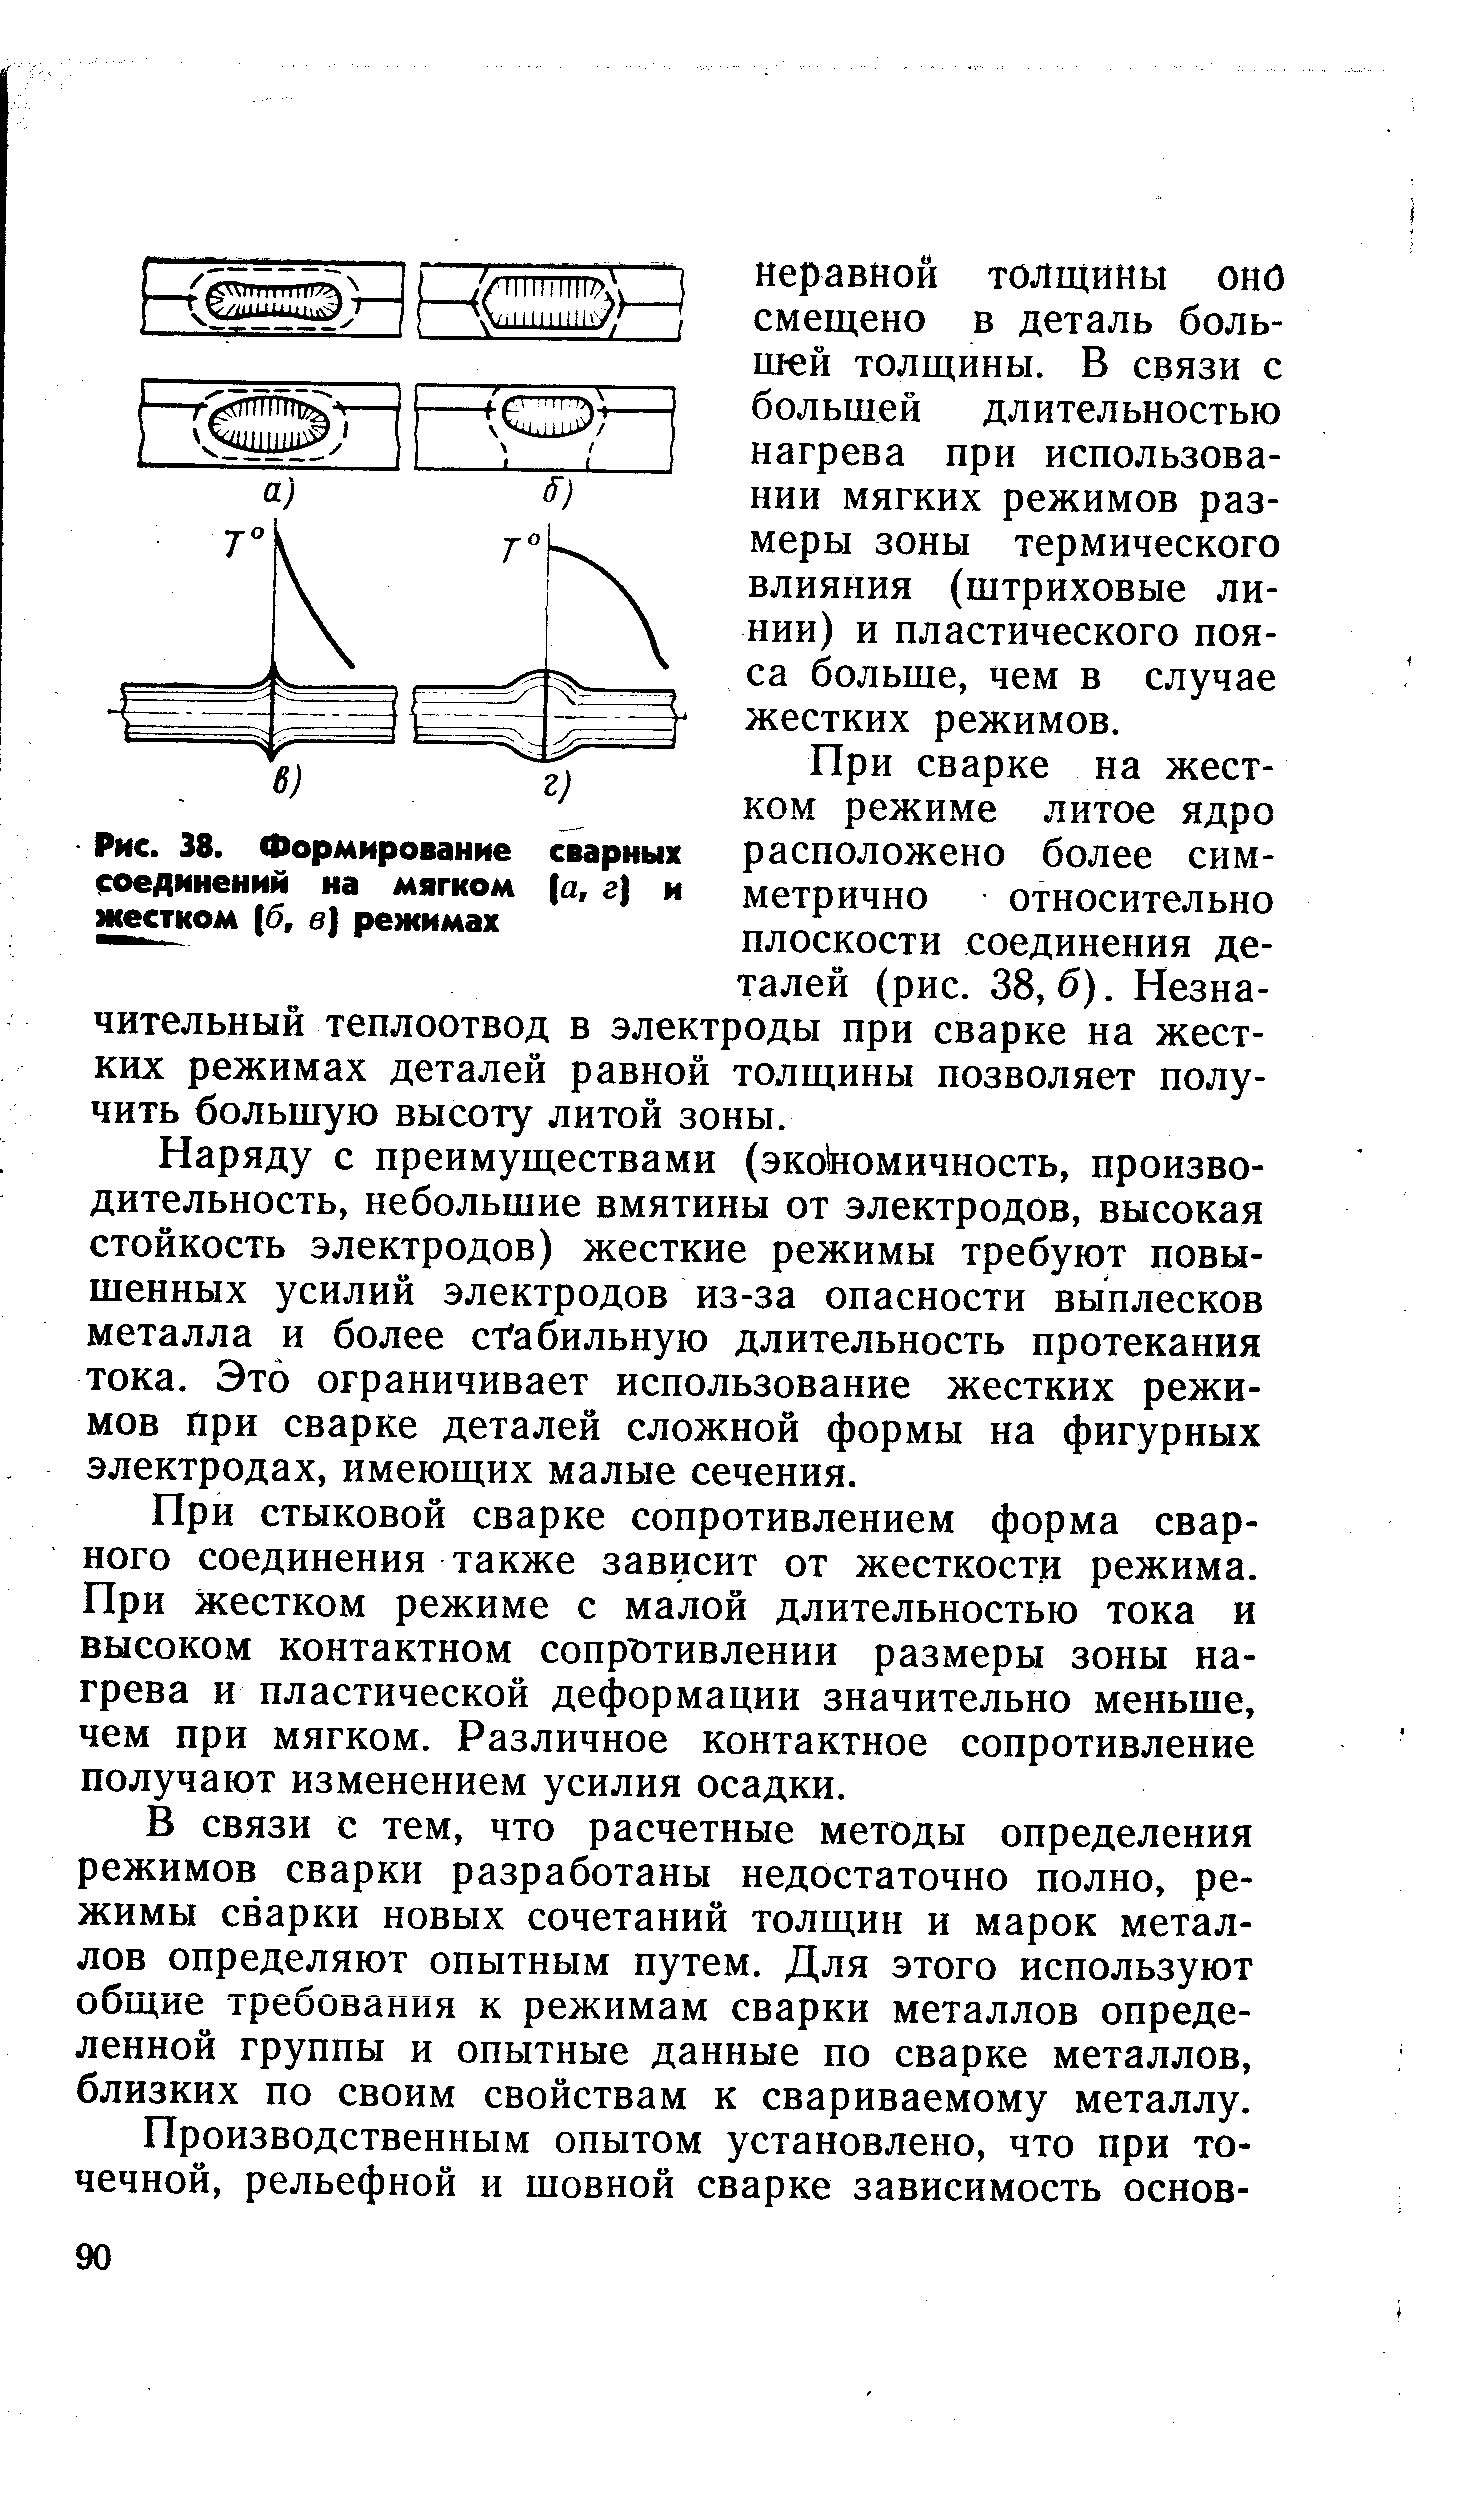 Рис. 38. Формирование соединений на мягком жестком [б, в) режимах
